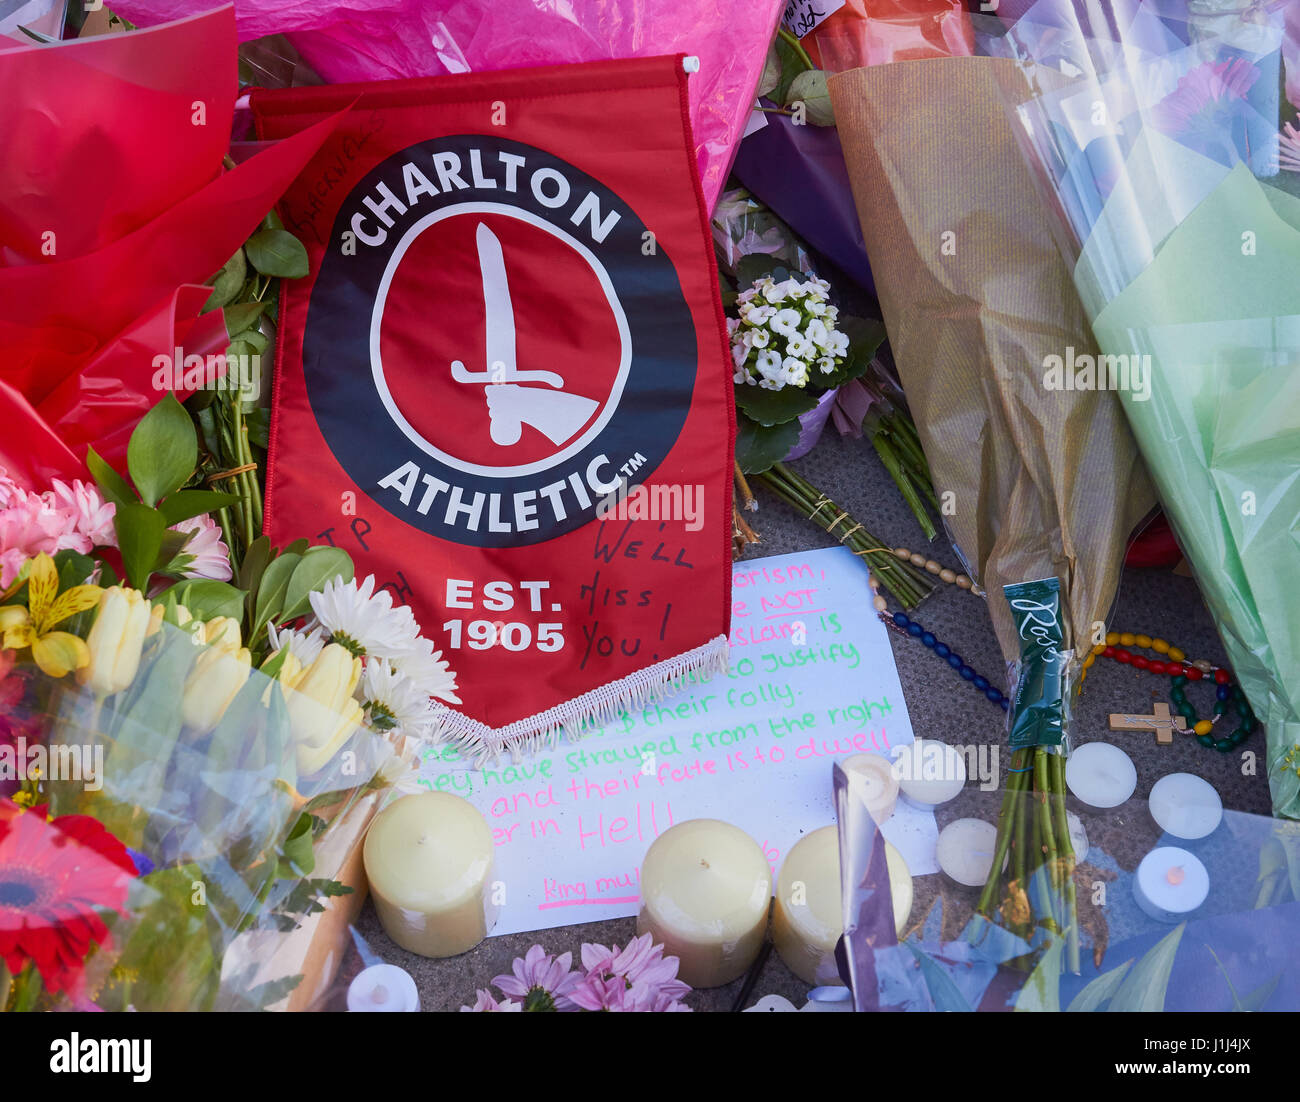 Charlton Athletic Flagge, der Football Club wurde von PC Keith Palmer der Polizist in der Westminster Terroranschlag, London, England ermordet unterstützt. Stockfoto